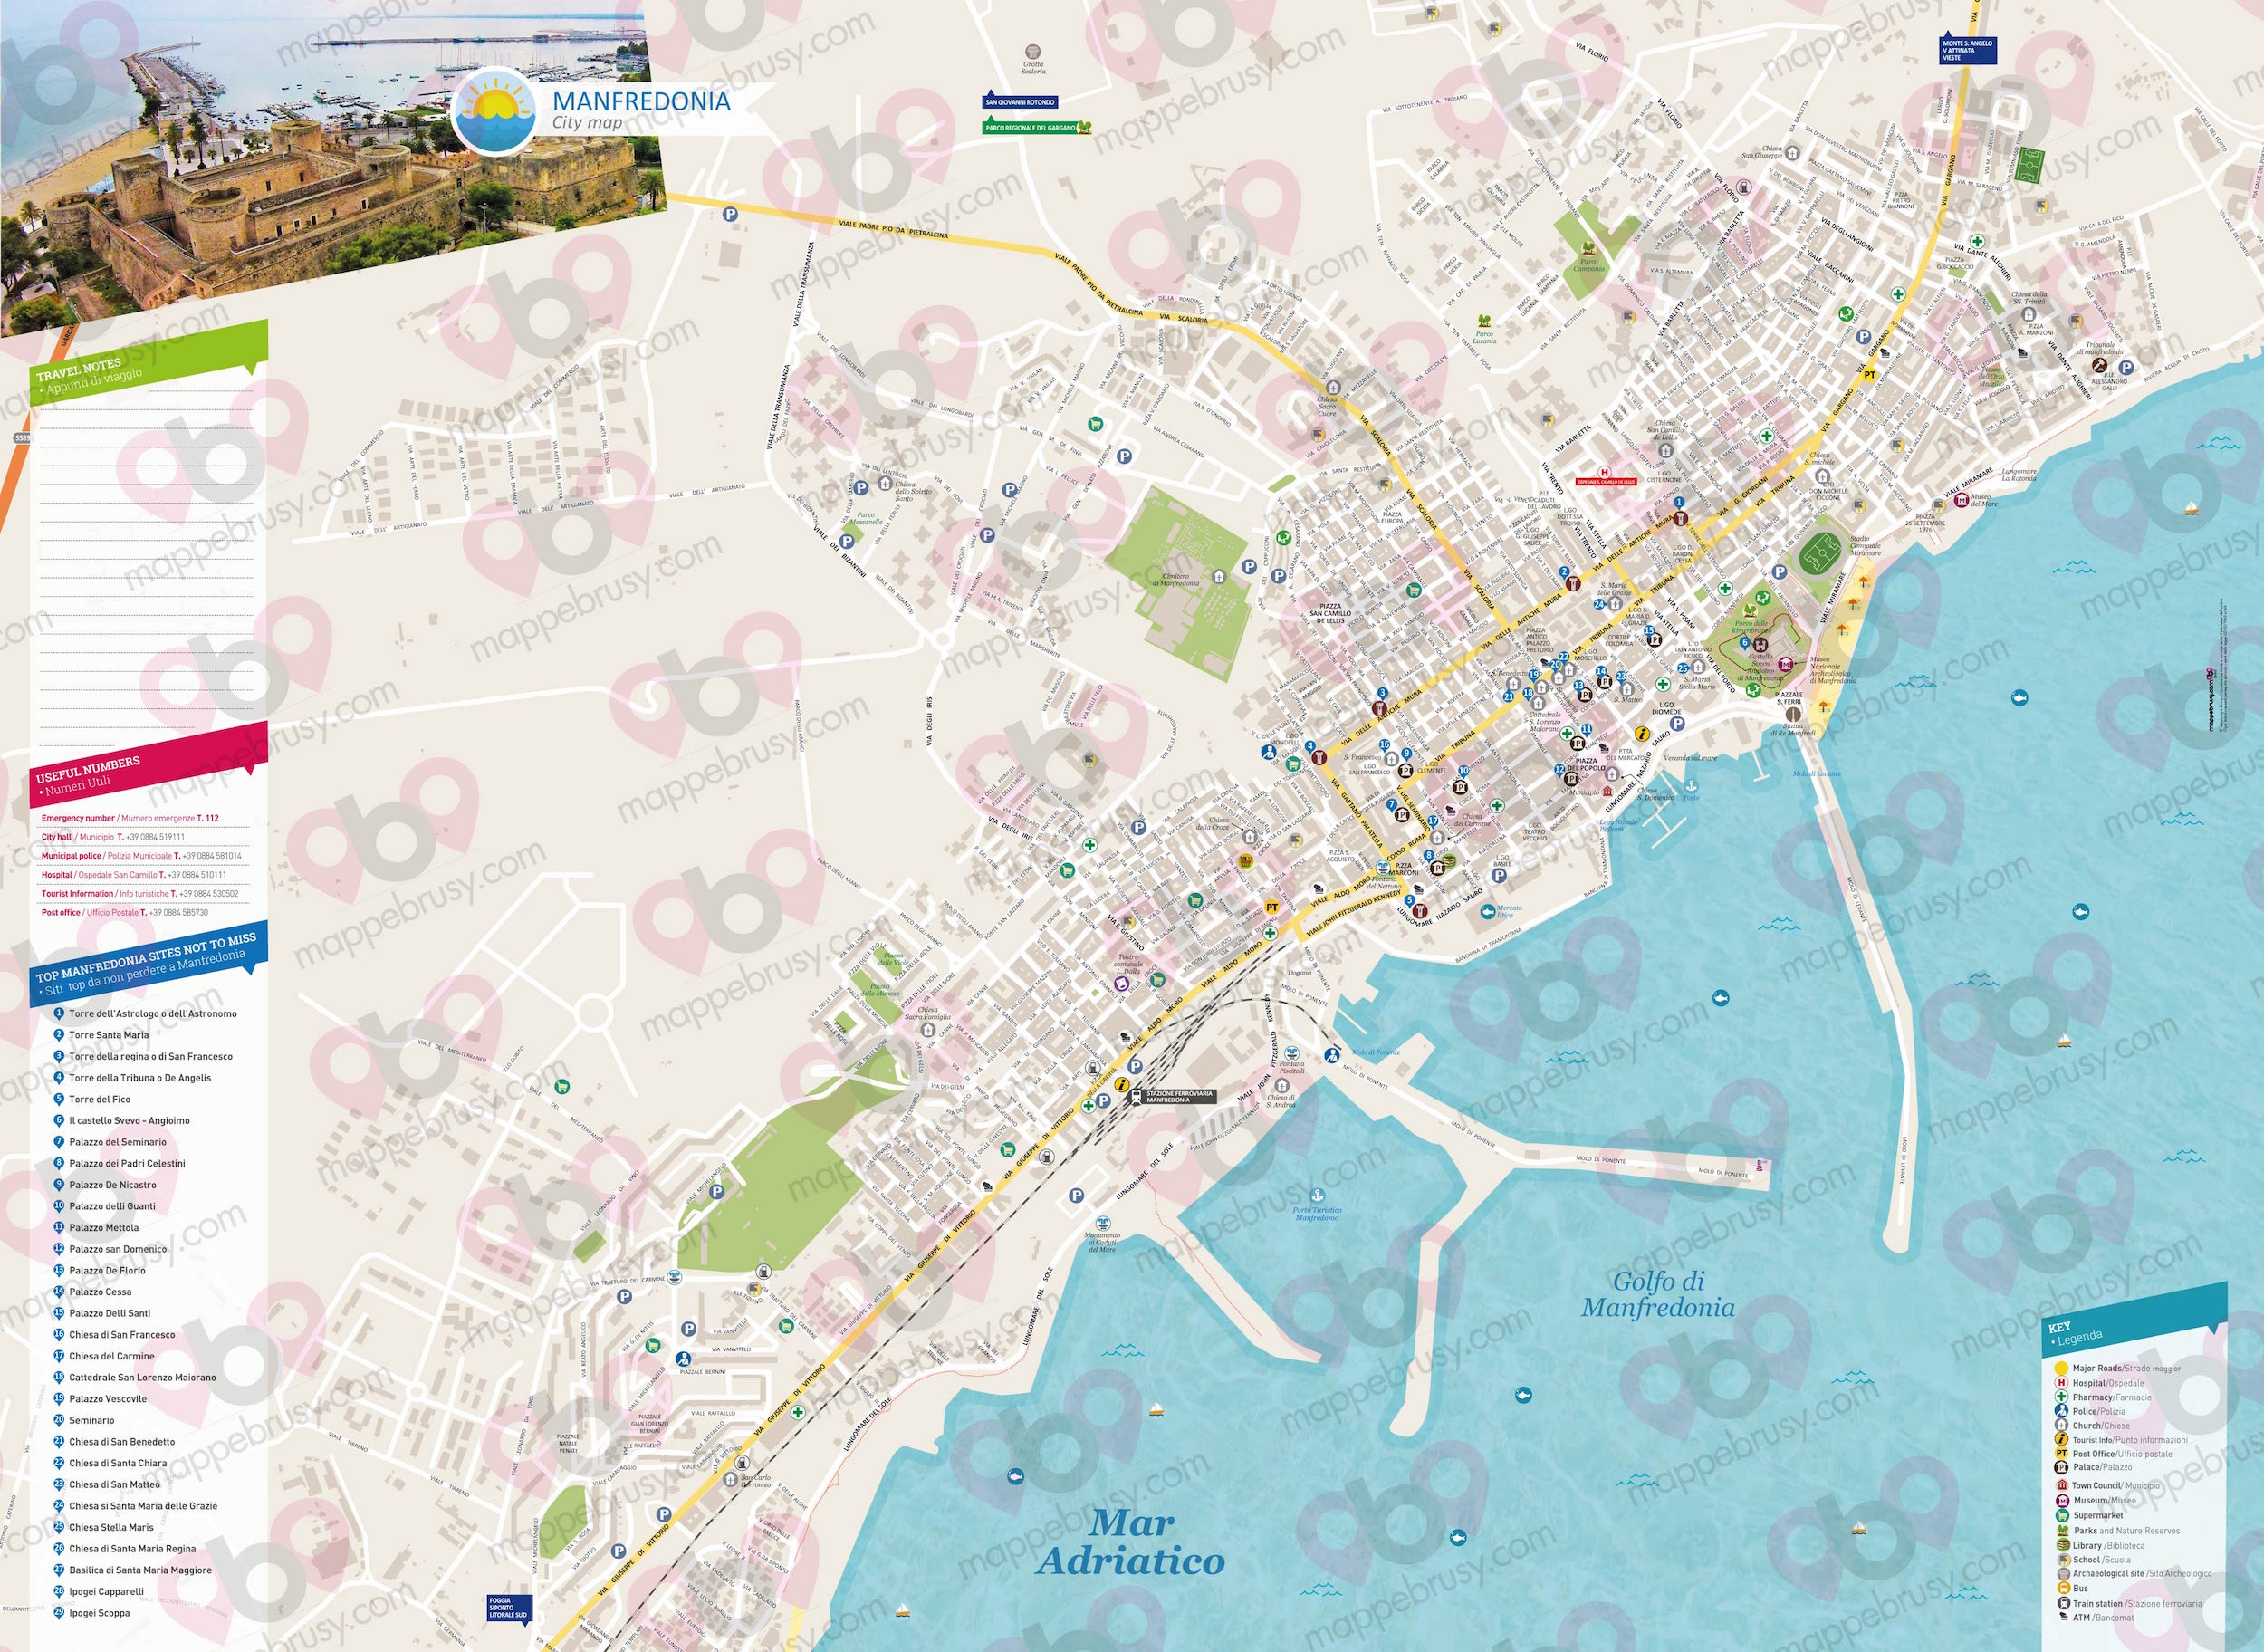 Mappa di Manfredonia - Manfredonia city map - mappa Manfredonia - mappa personalizzata di Manfredonia